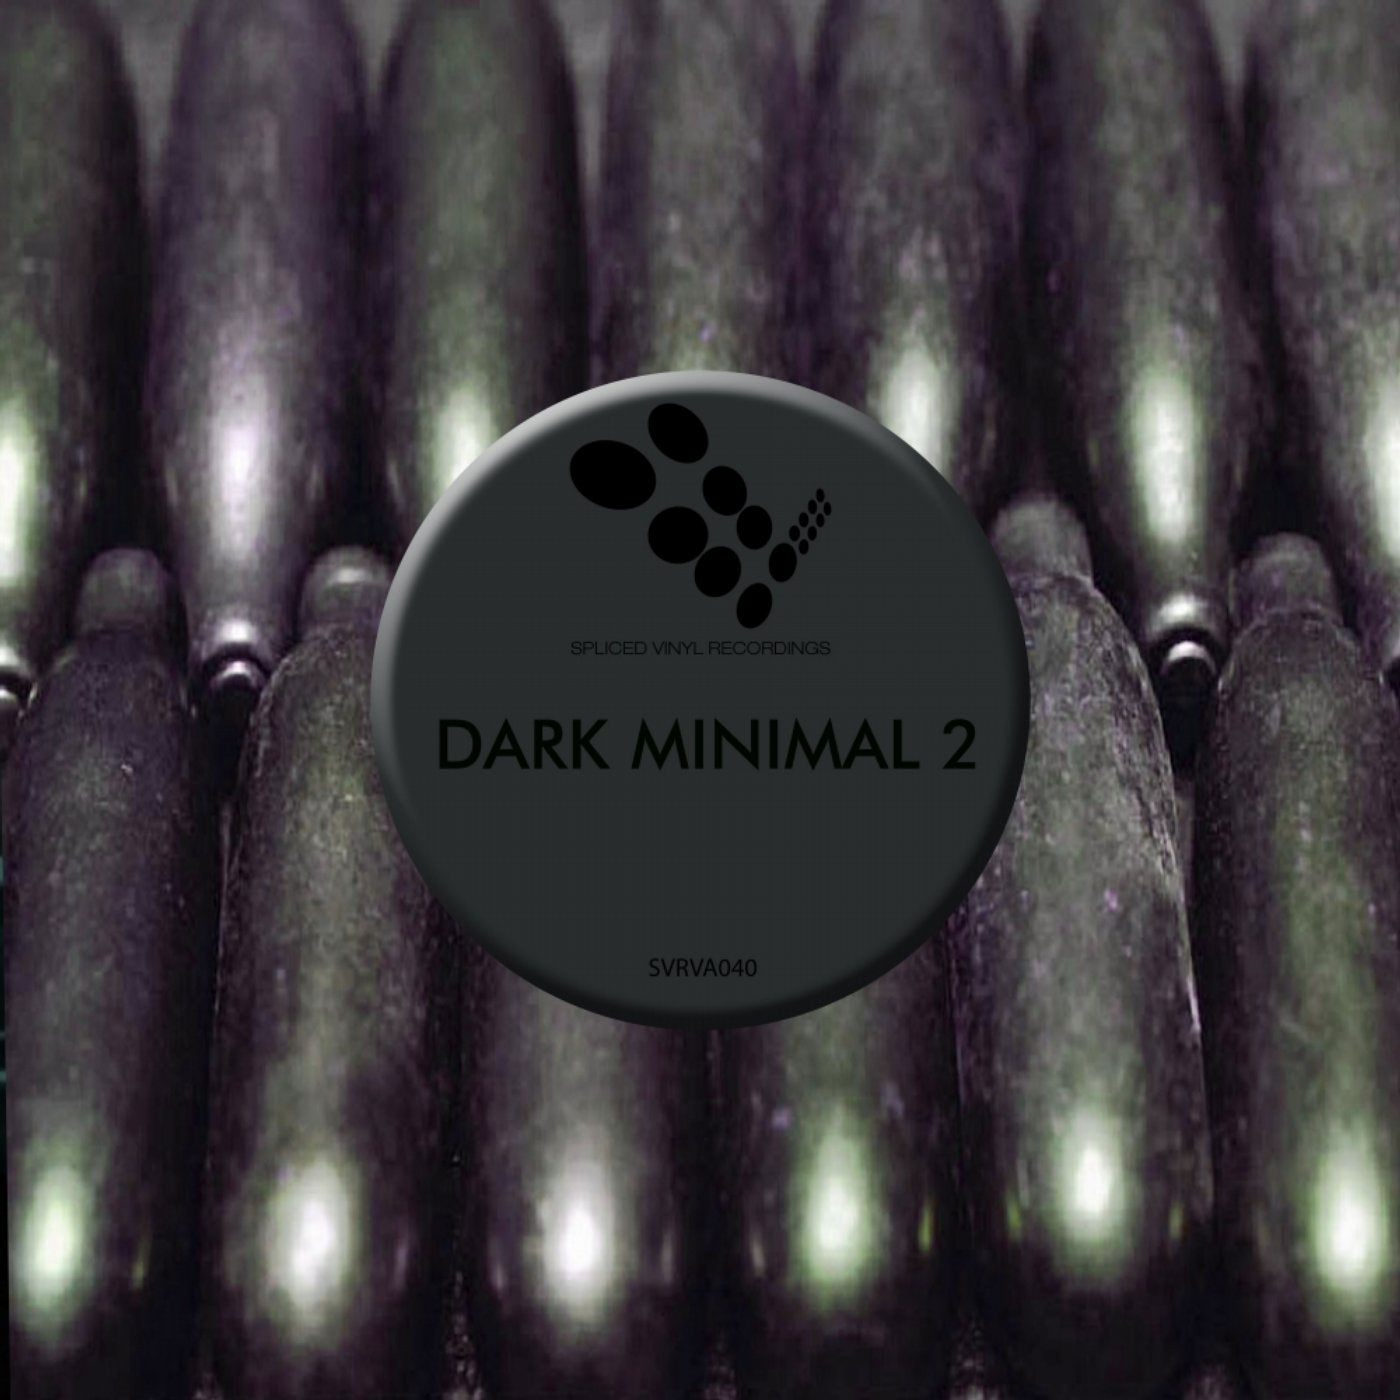 Dark Minimal 2